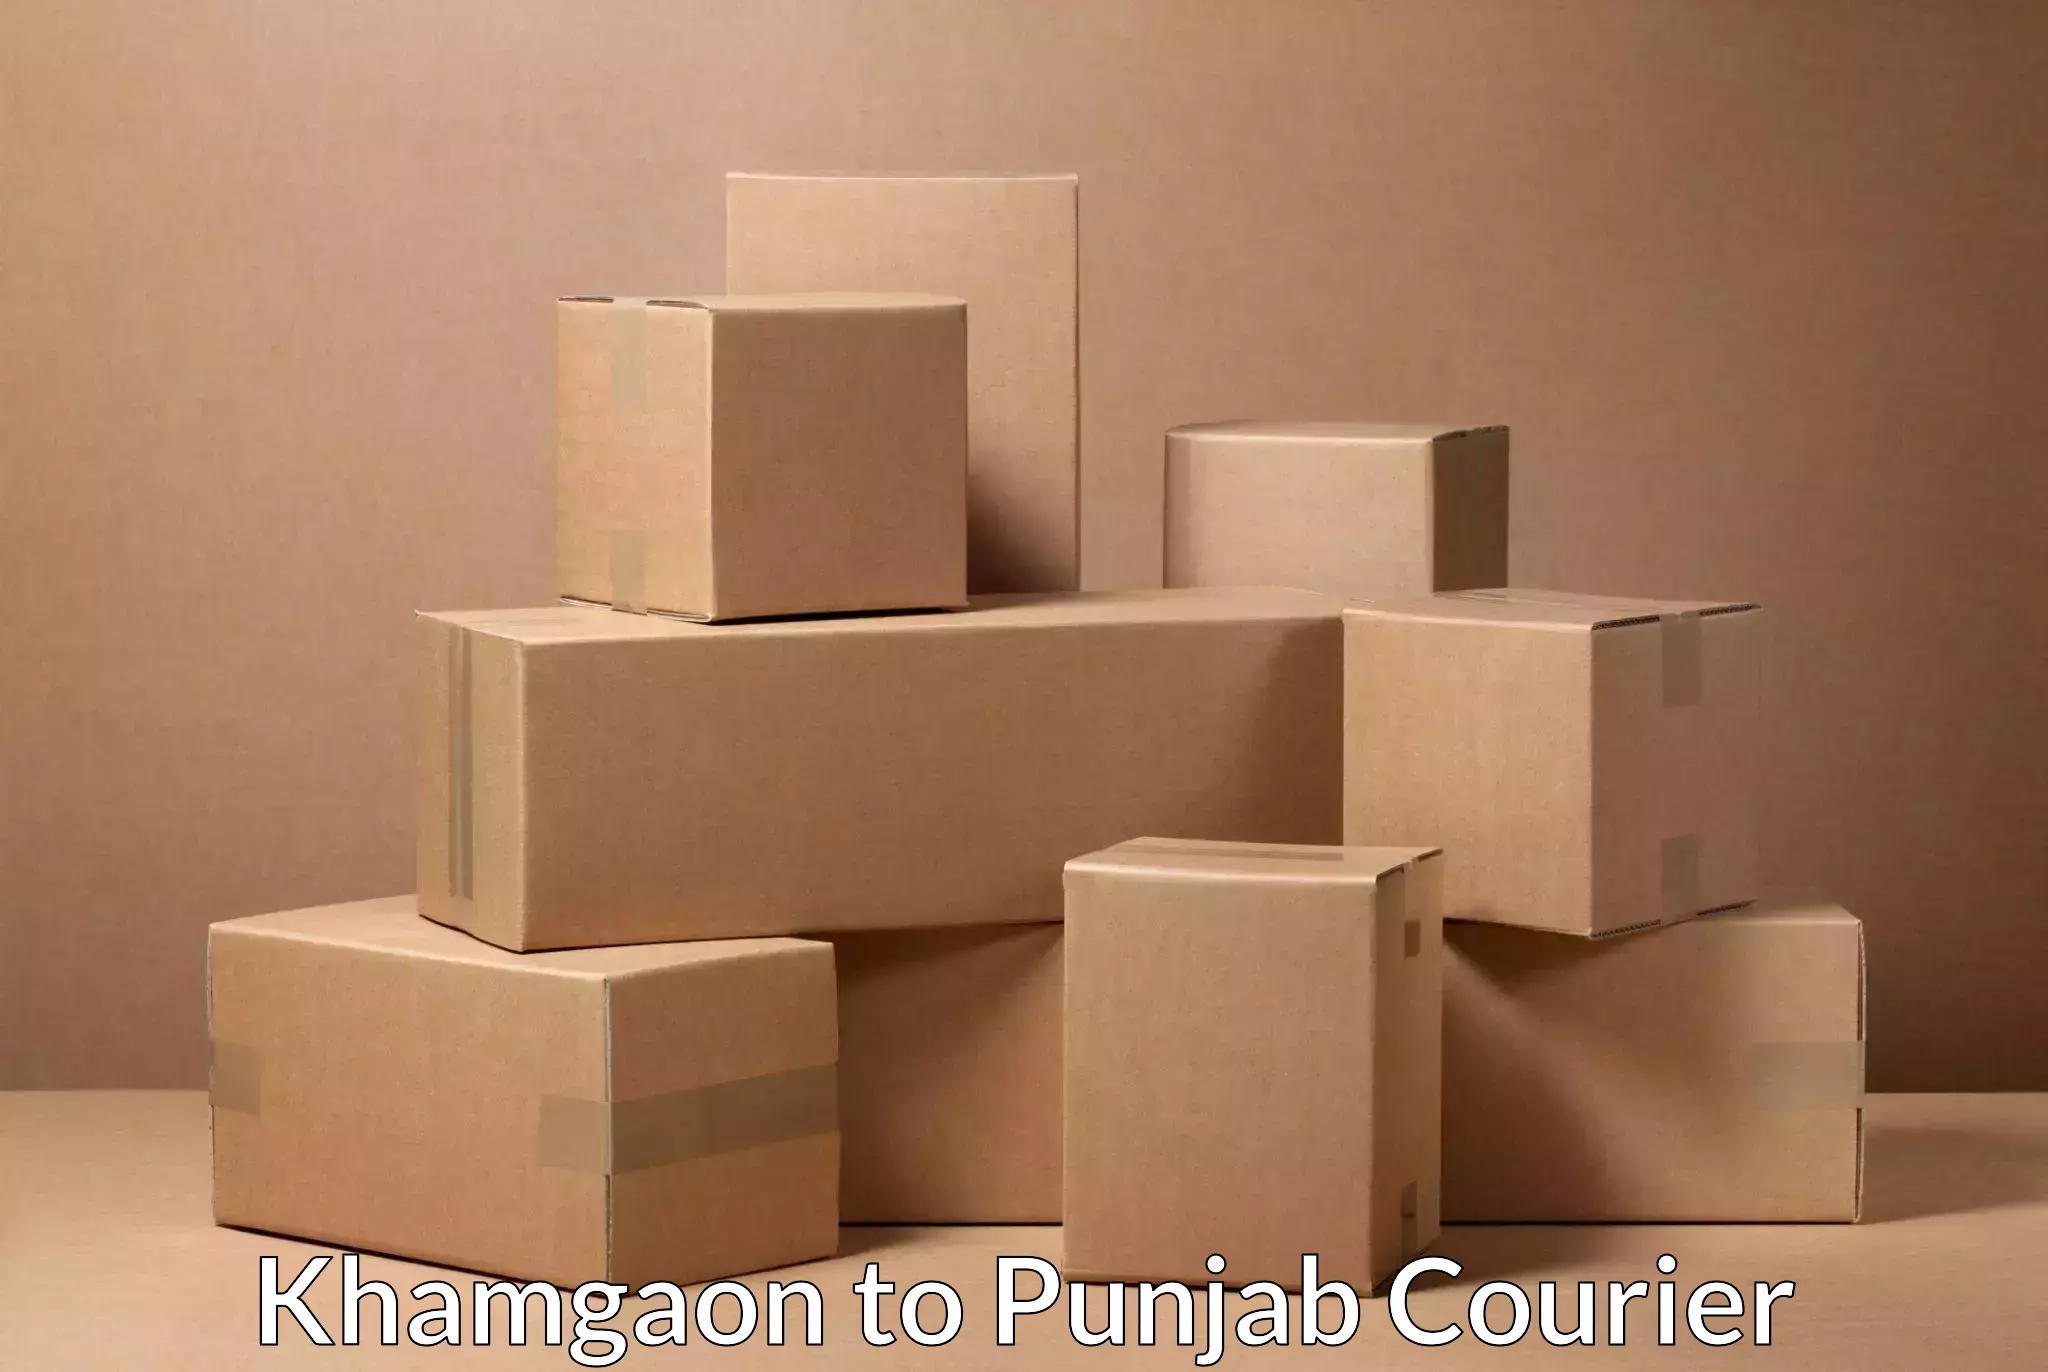 Efficient parcel delivery Khamgaon to Punjab